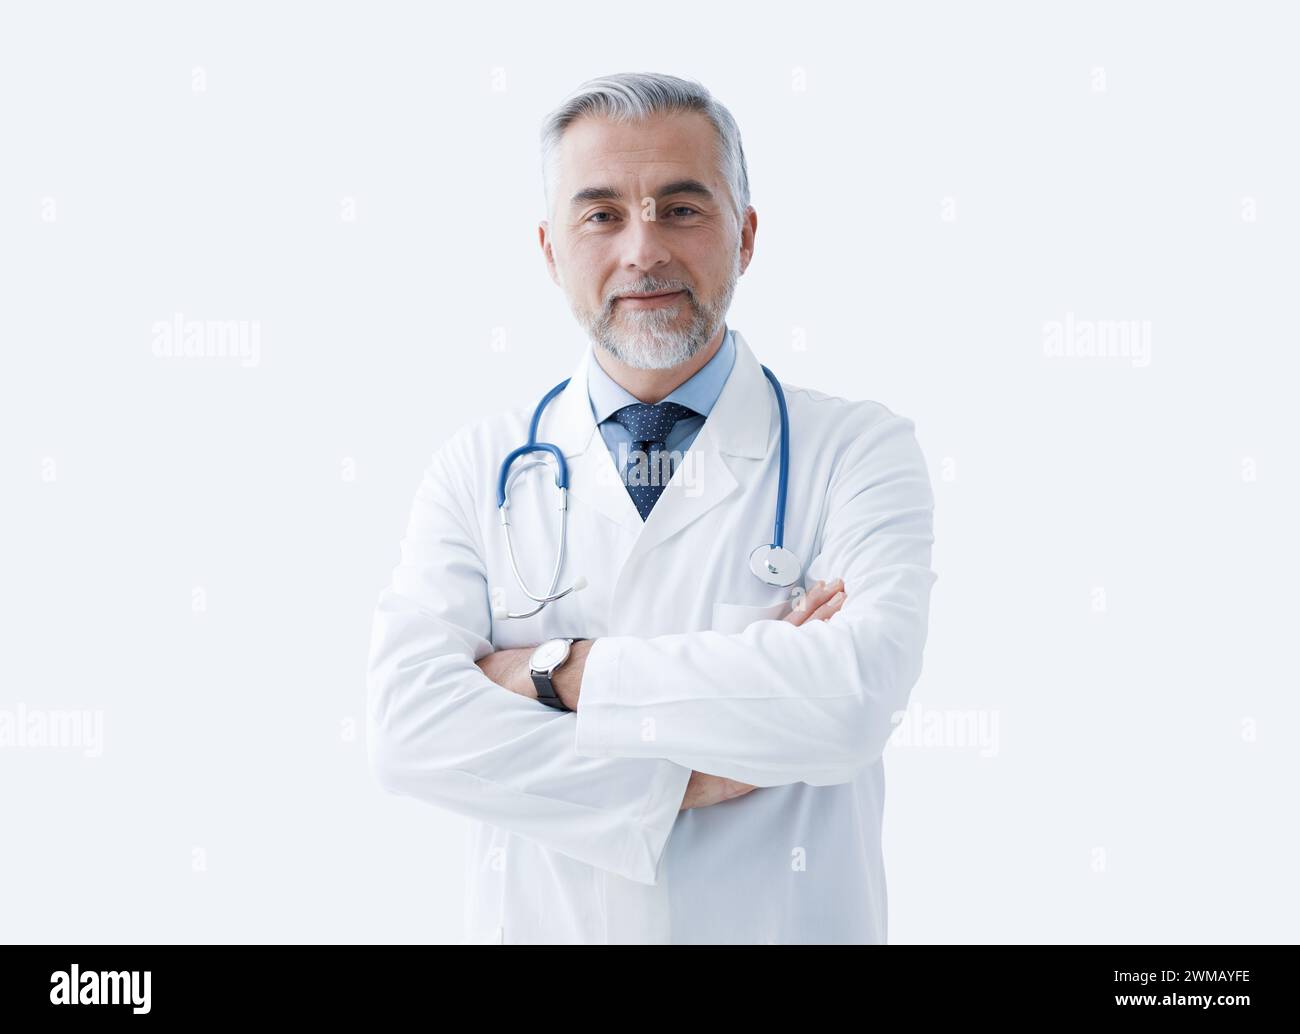 Selbstbewusster Arzt posiert mit überkreuzten Armen und lächelnd, Gesundheitswesen und Medizin Konzept Stockfoto